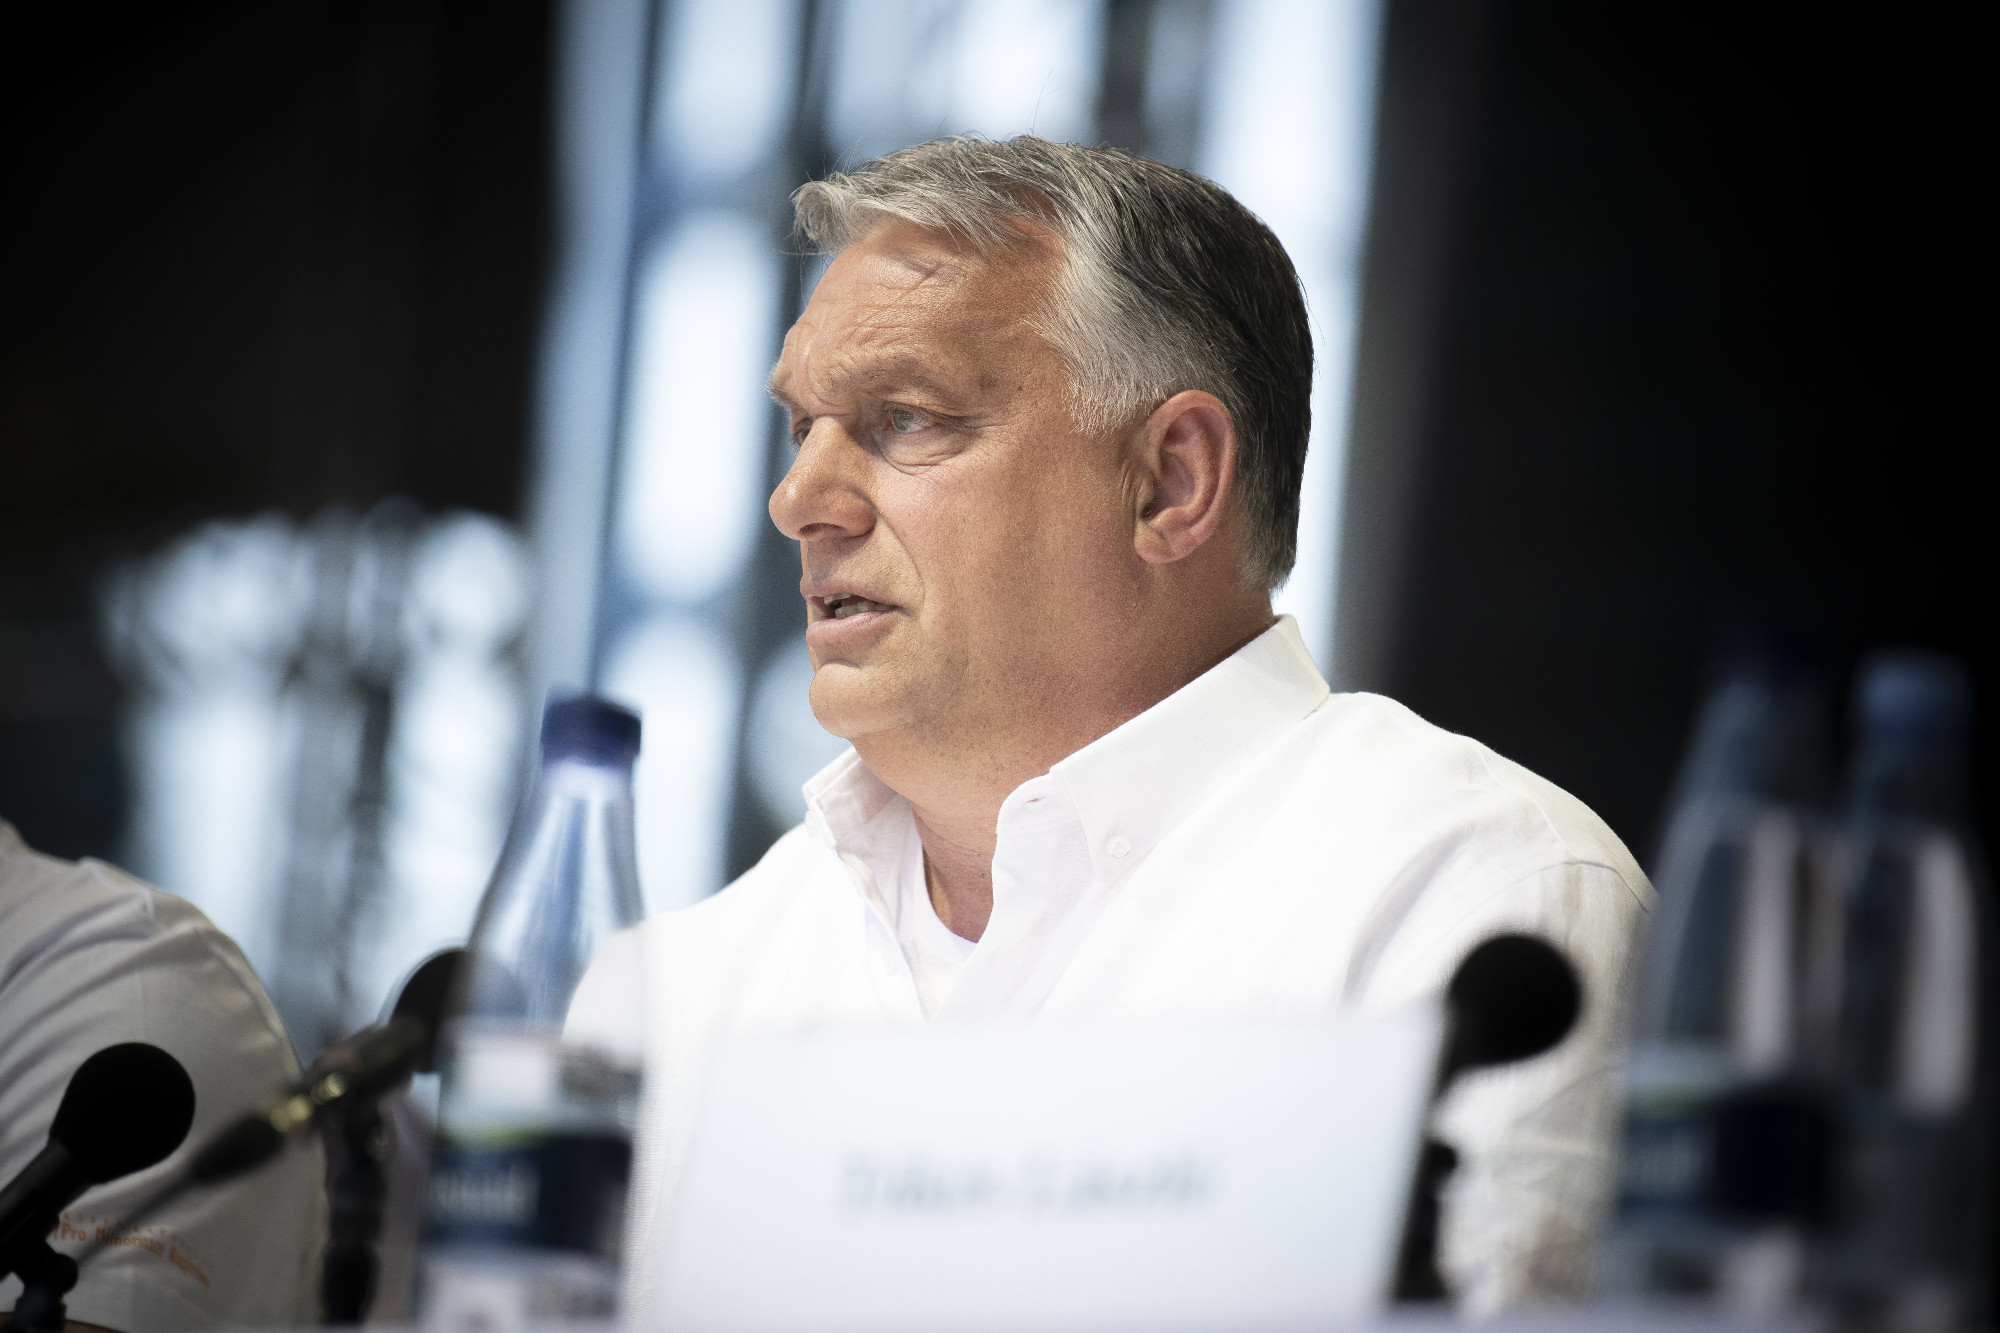 Erdélyi értelmiségiek tiltakoznak Orbán beszéde ellen